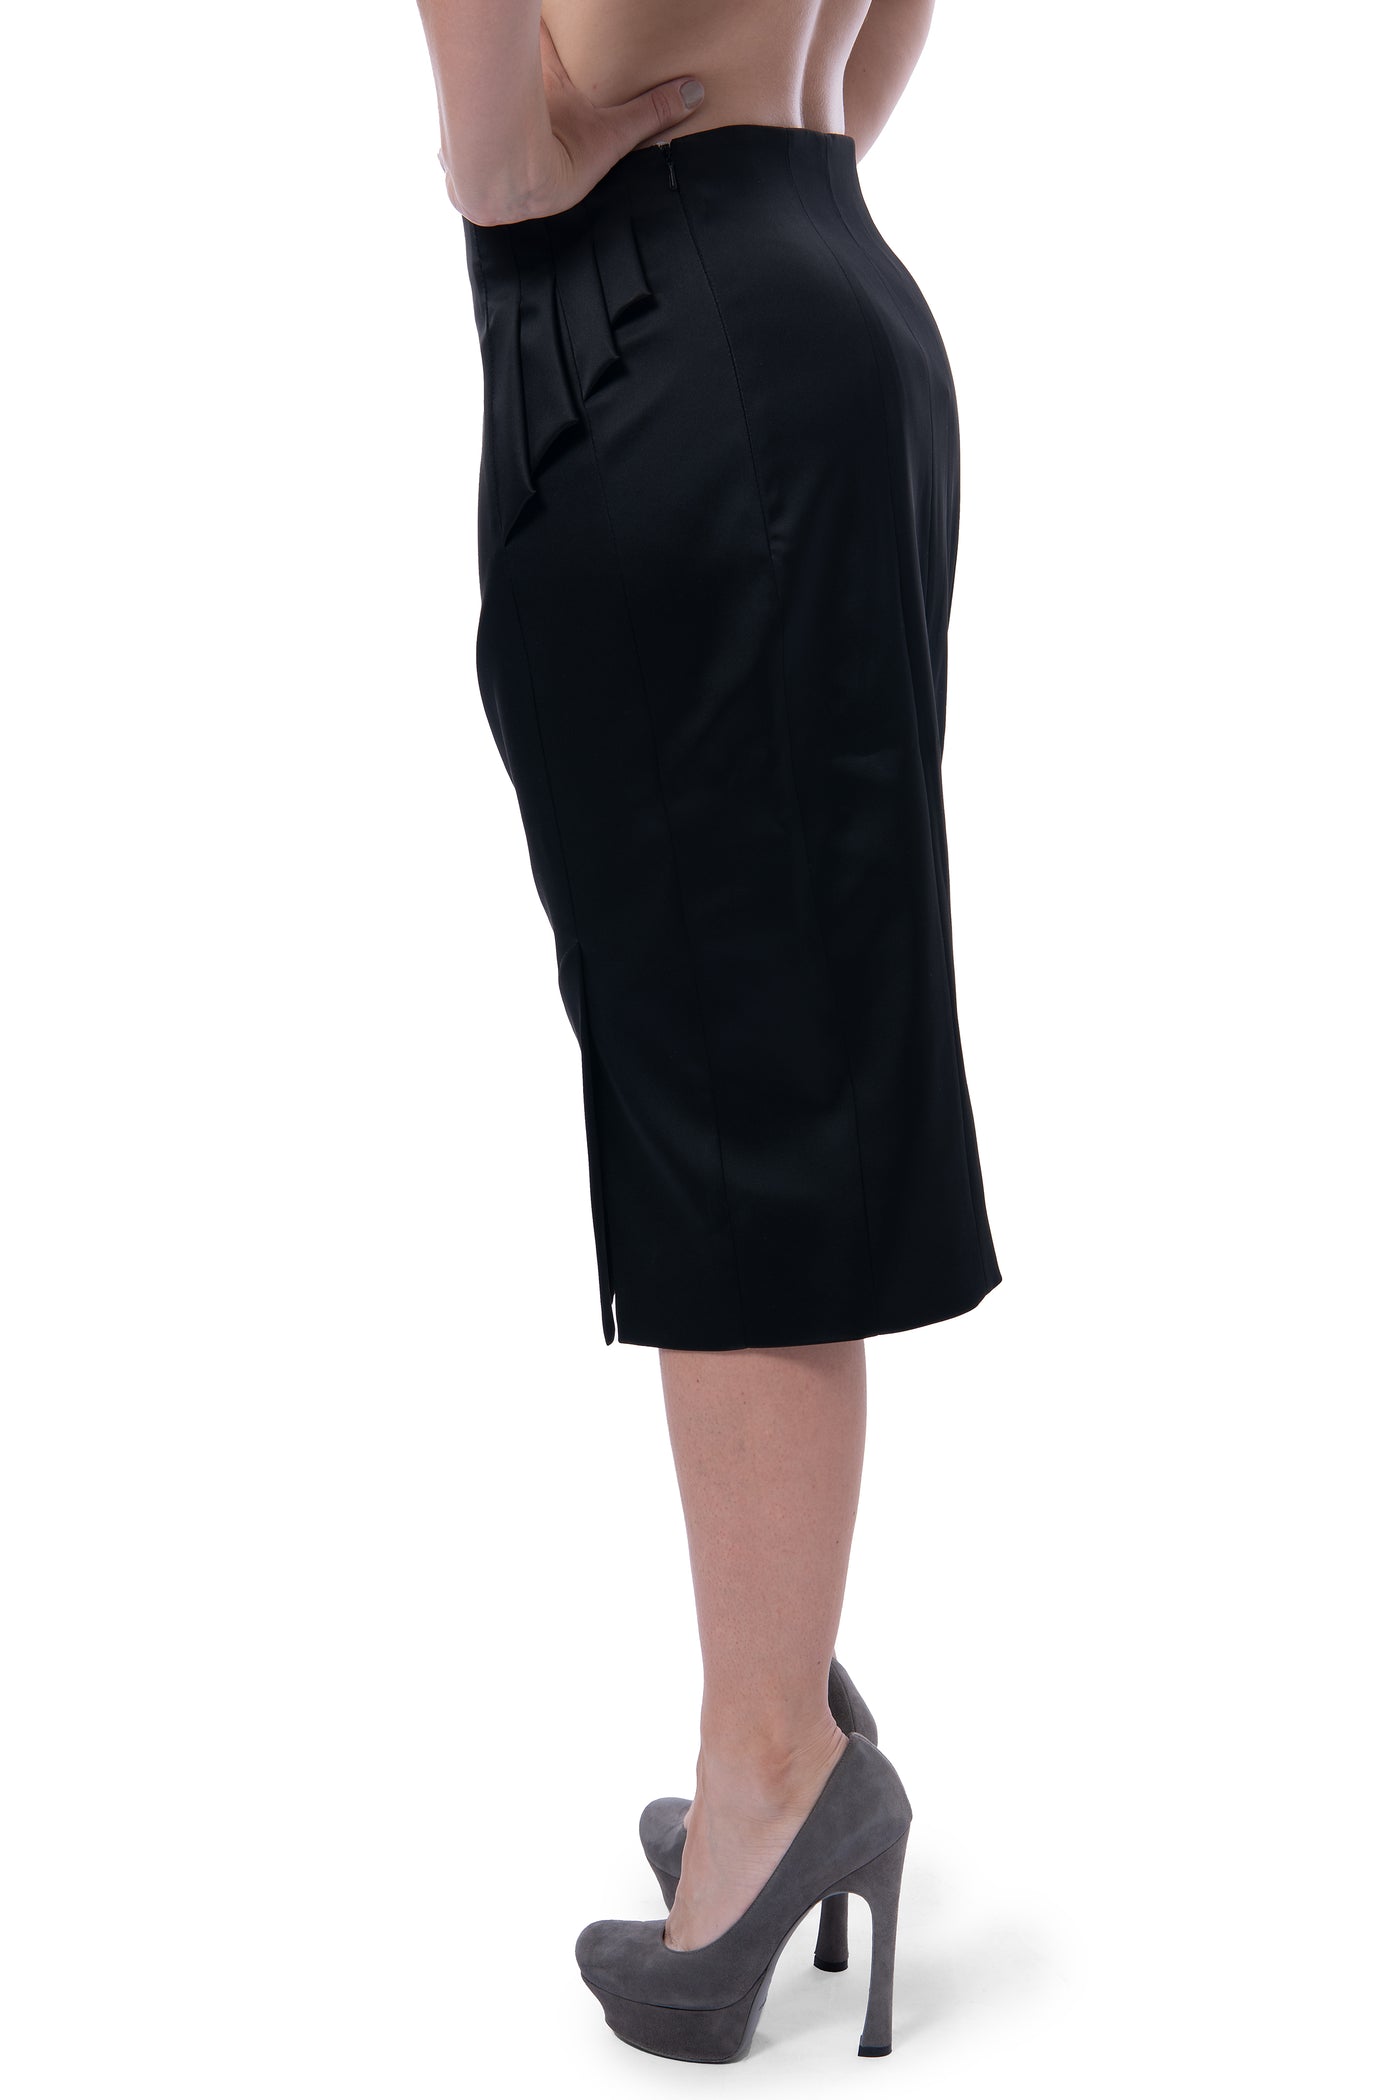 Karen Millen, brand new black skirt